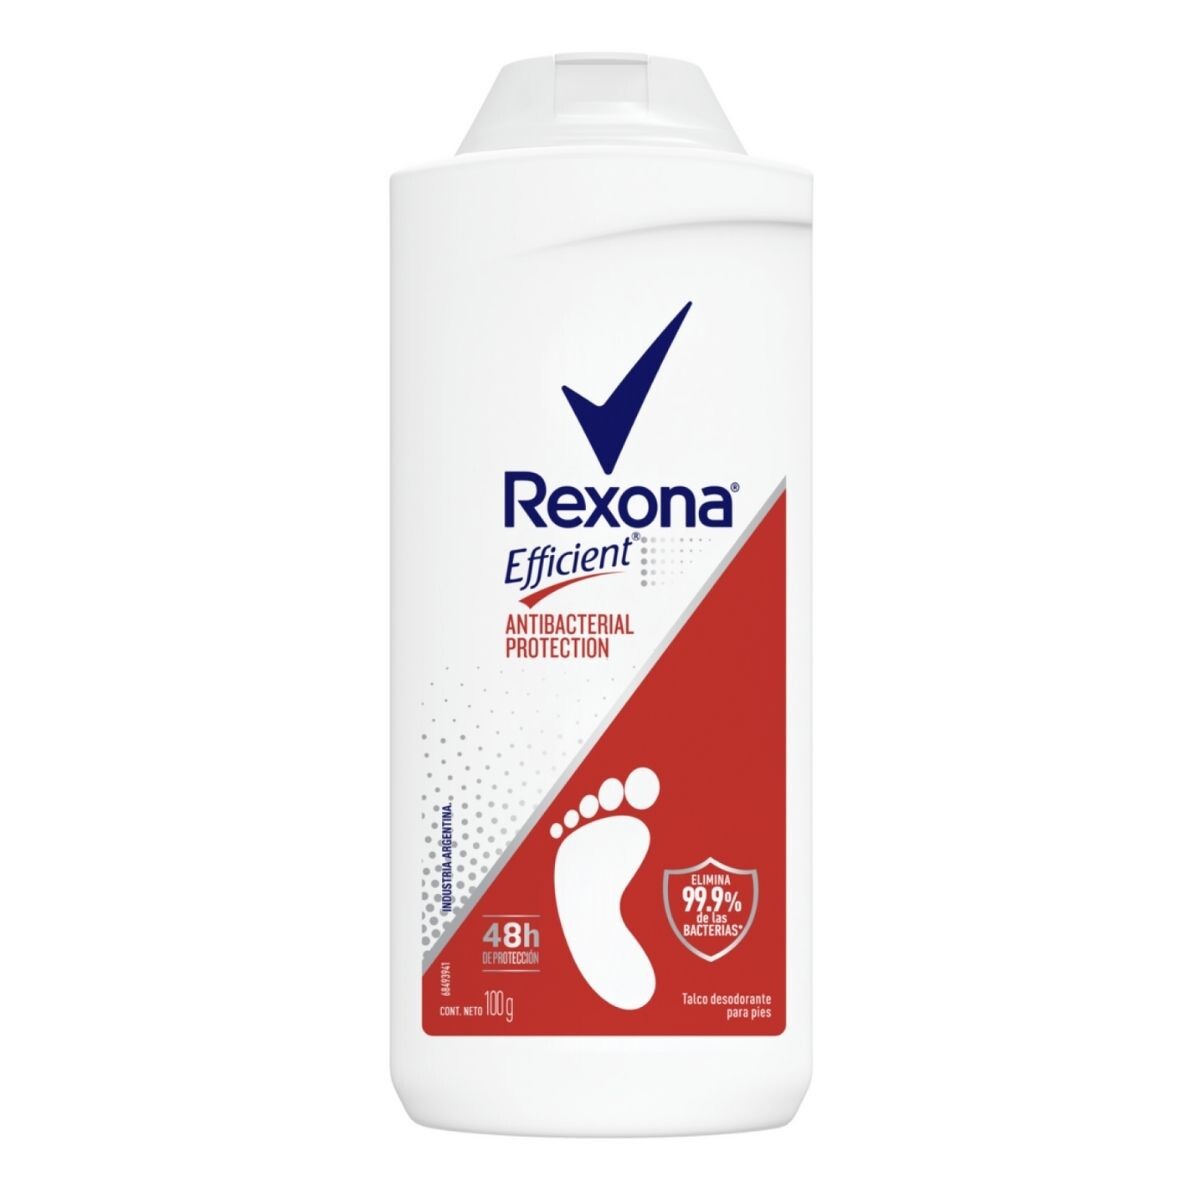 Talco Desodorante para Pies Rexona Efficient Antibacterial Protection - 100 GR 